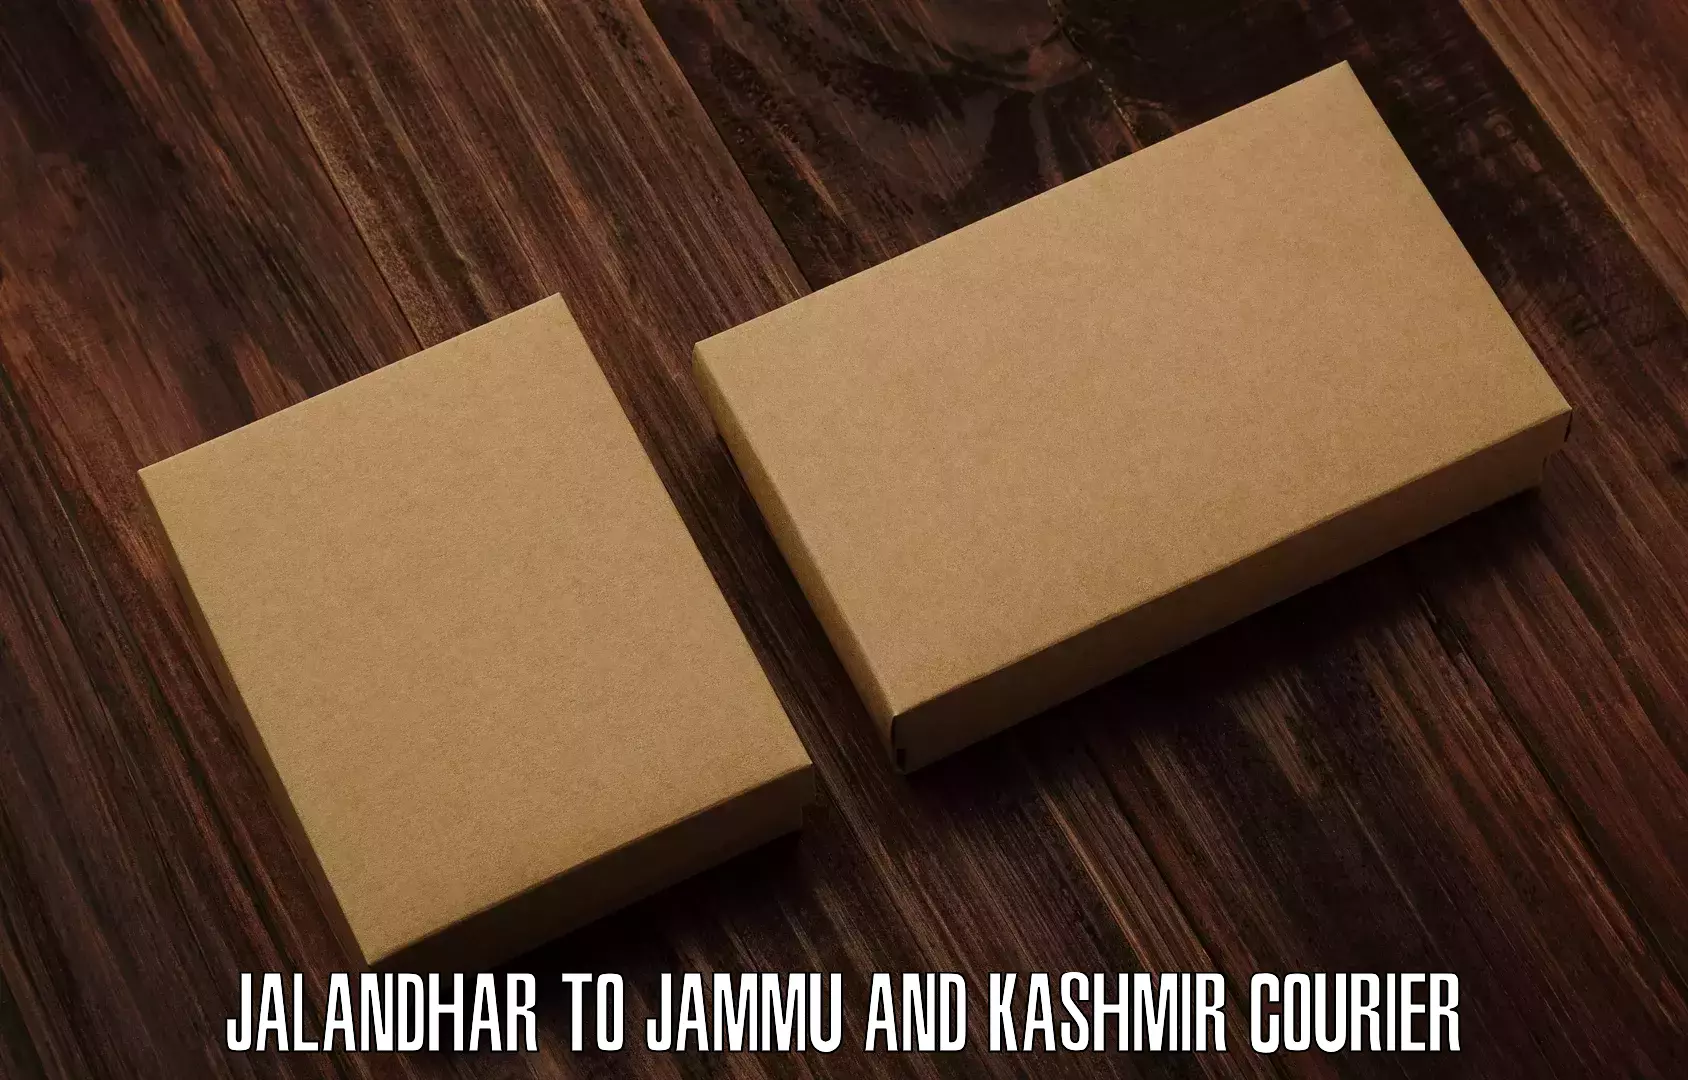 High-quality delivery services Jalandhar to Anantnag